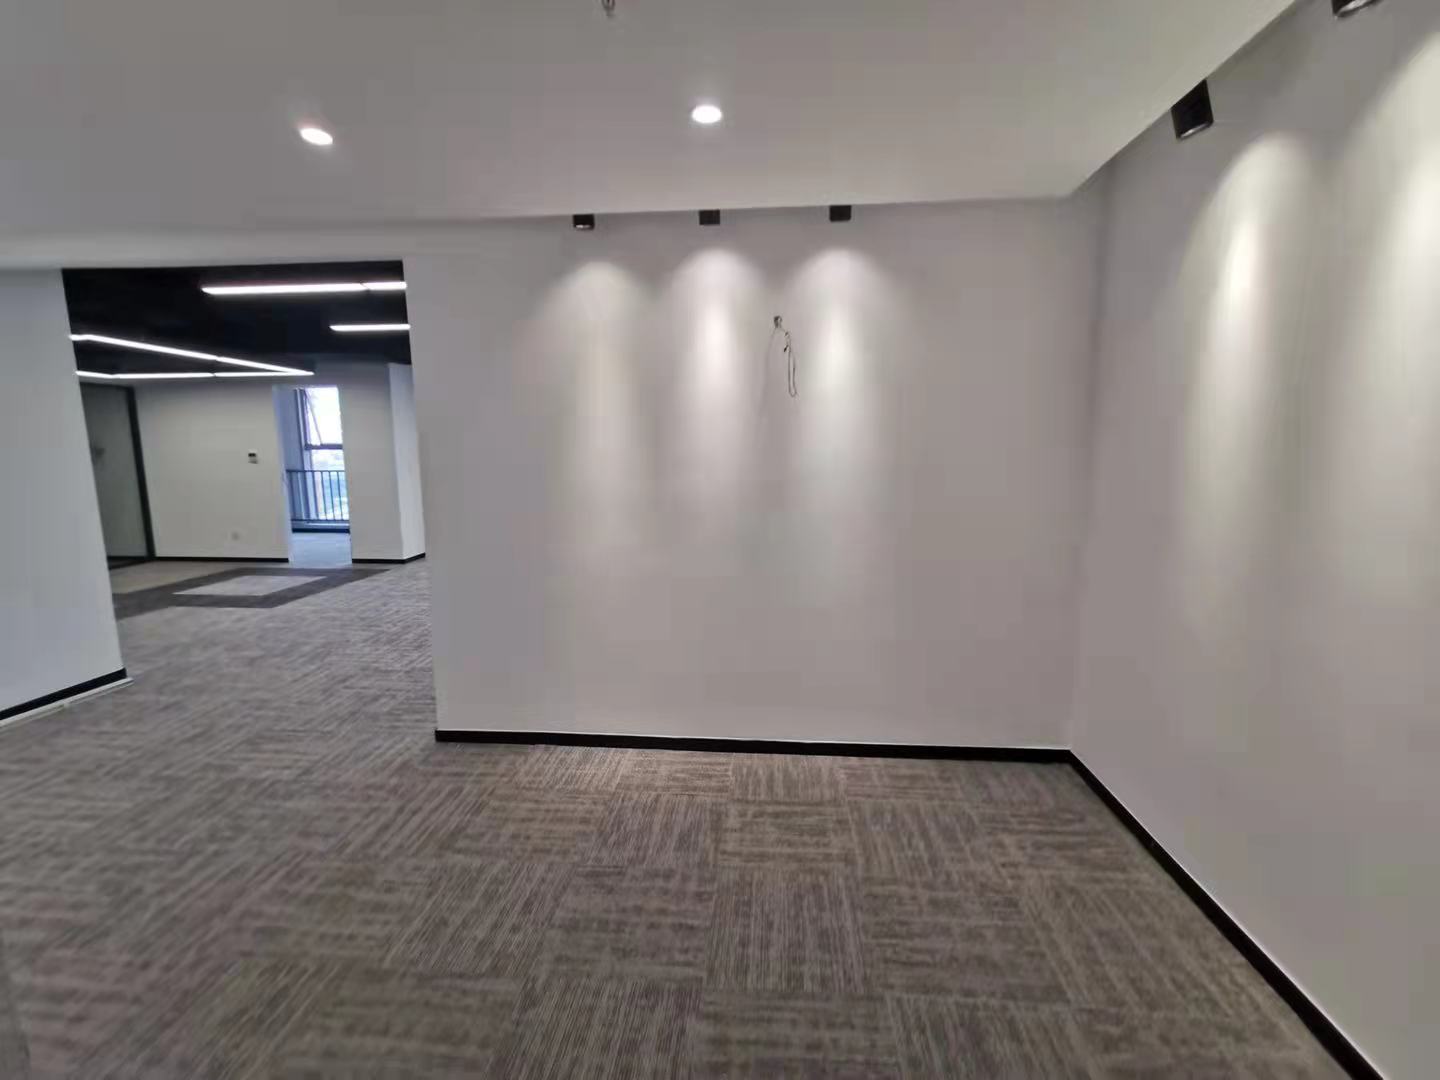 沪太路飞马旅创意园 200平遗留装修 独立空调 办公室选址 (图2)